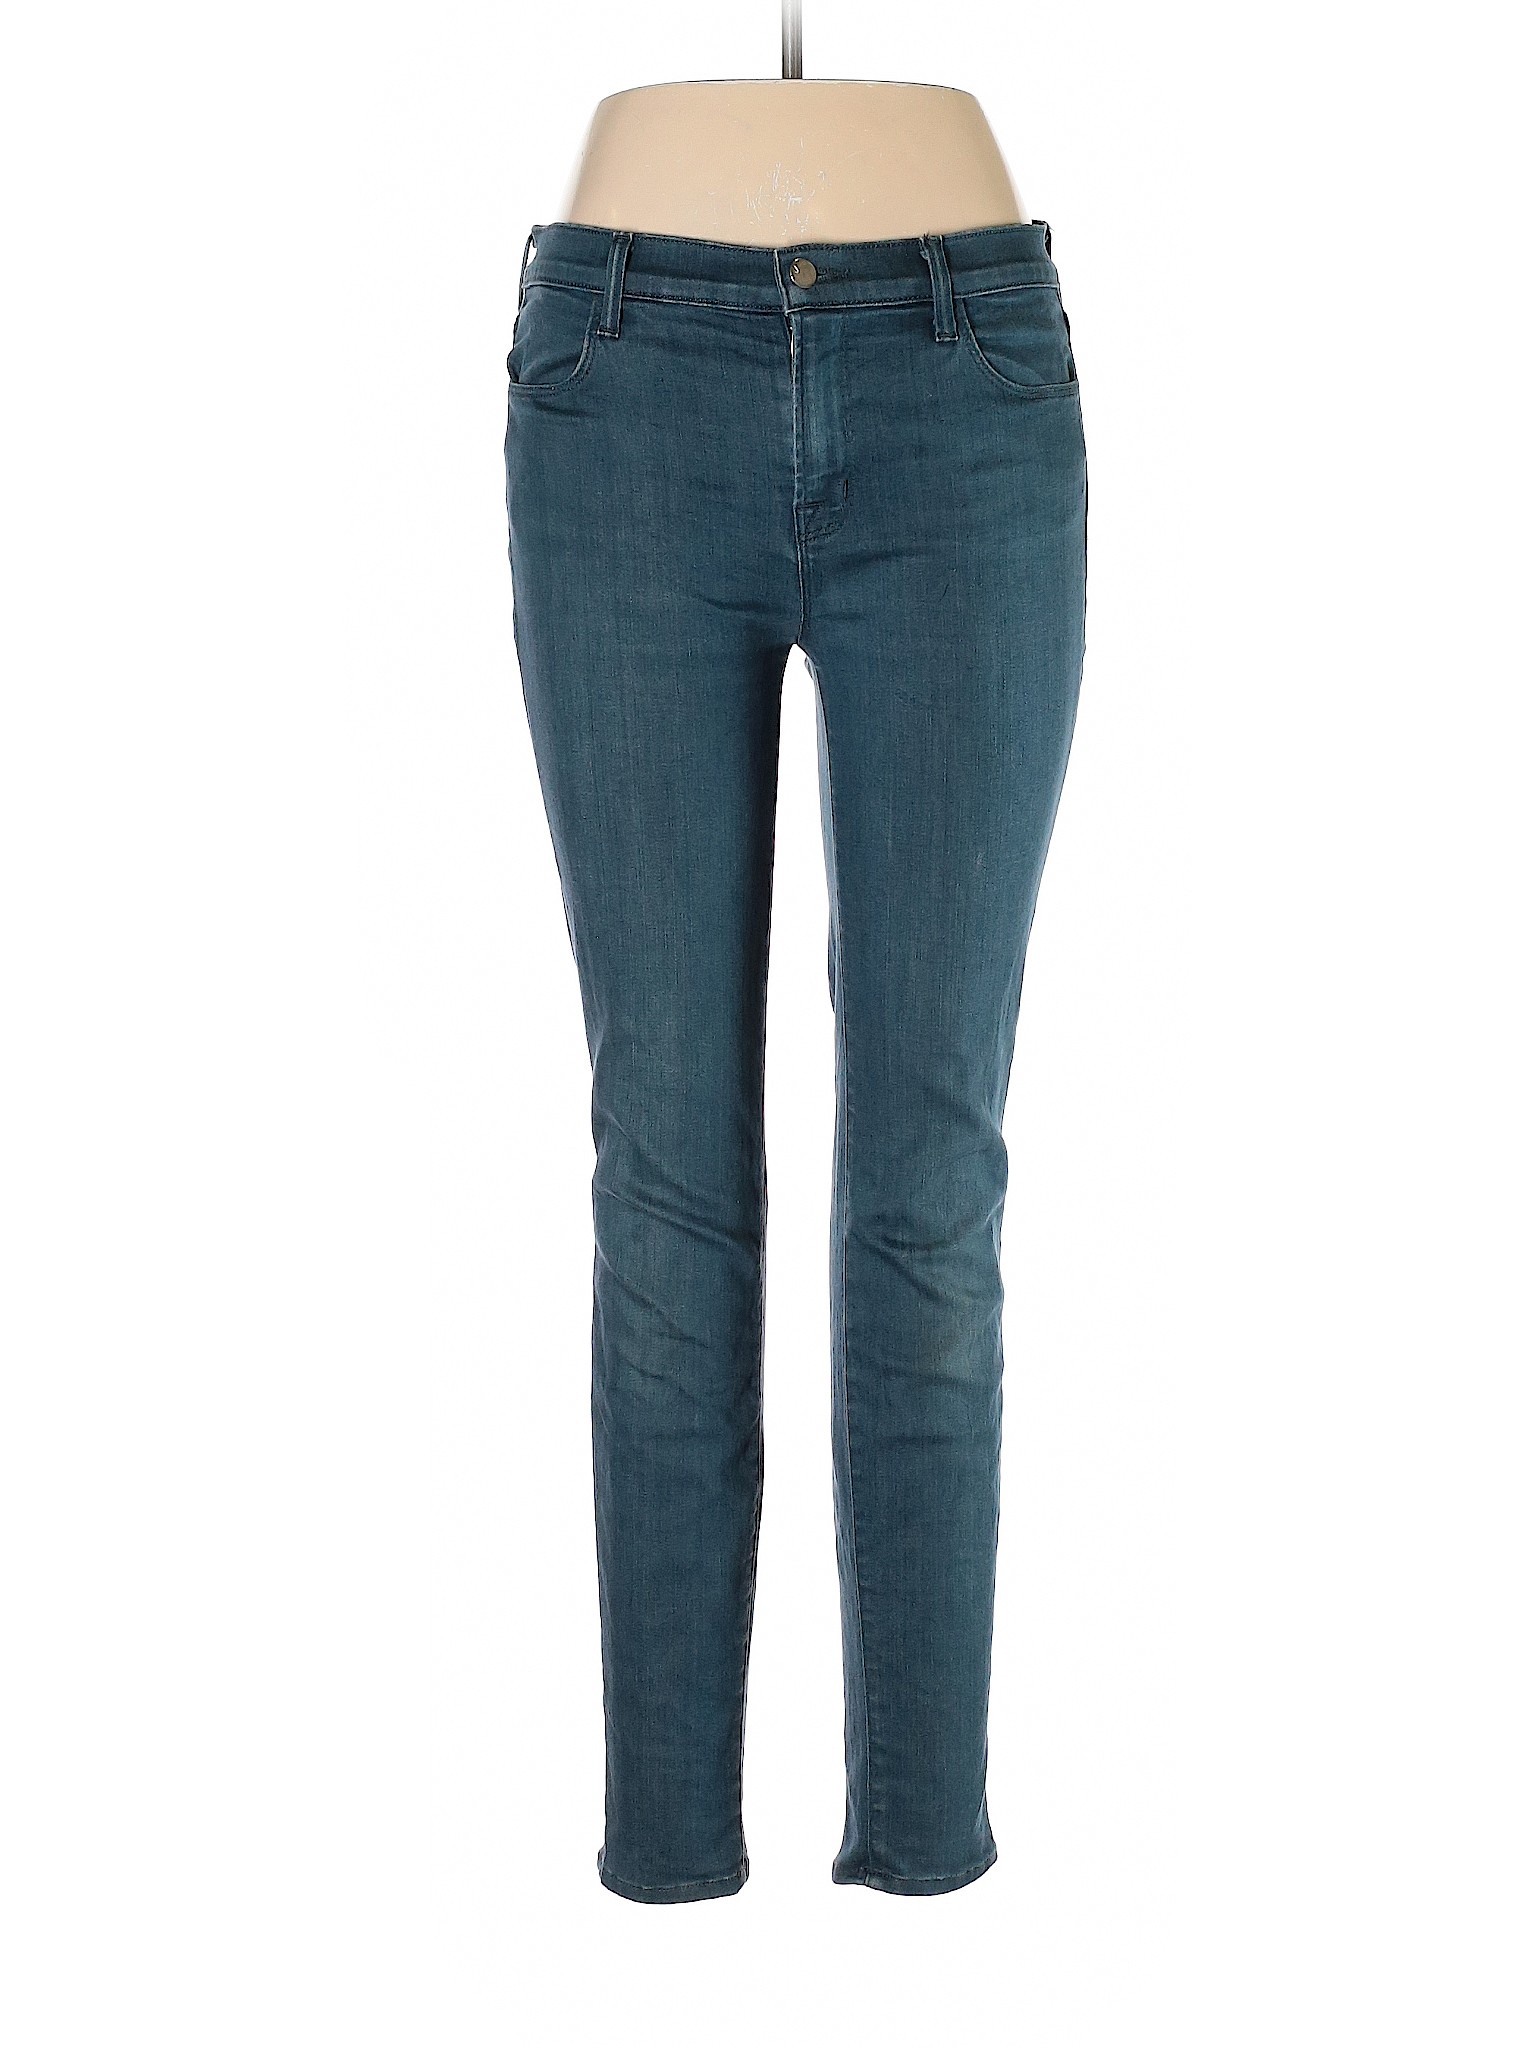 J Brand Women Green Jeans 31W | eBay